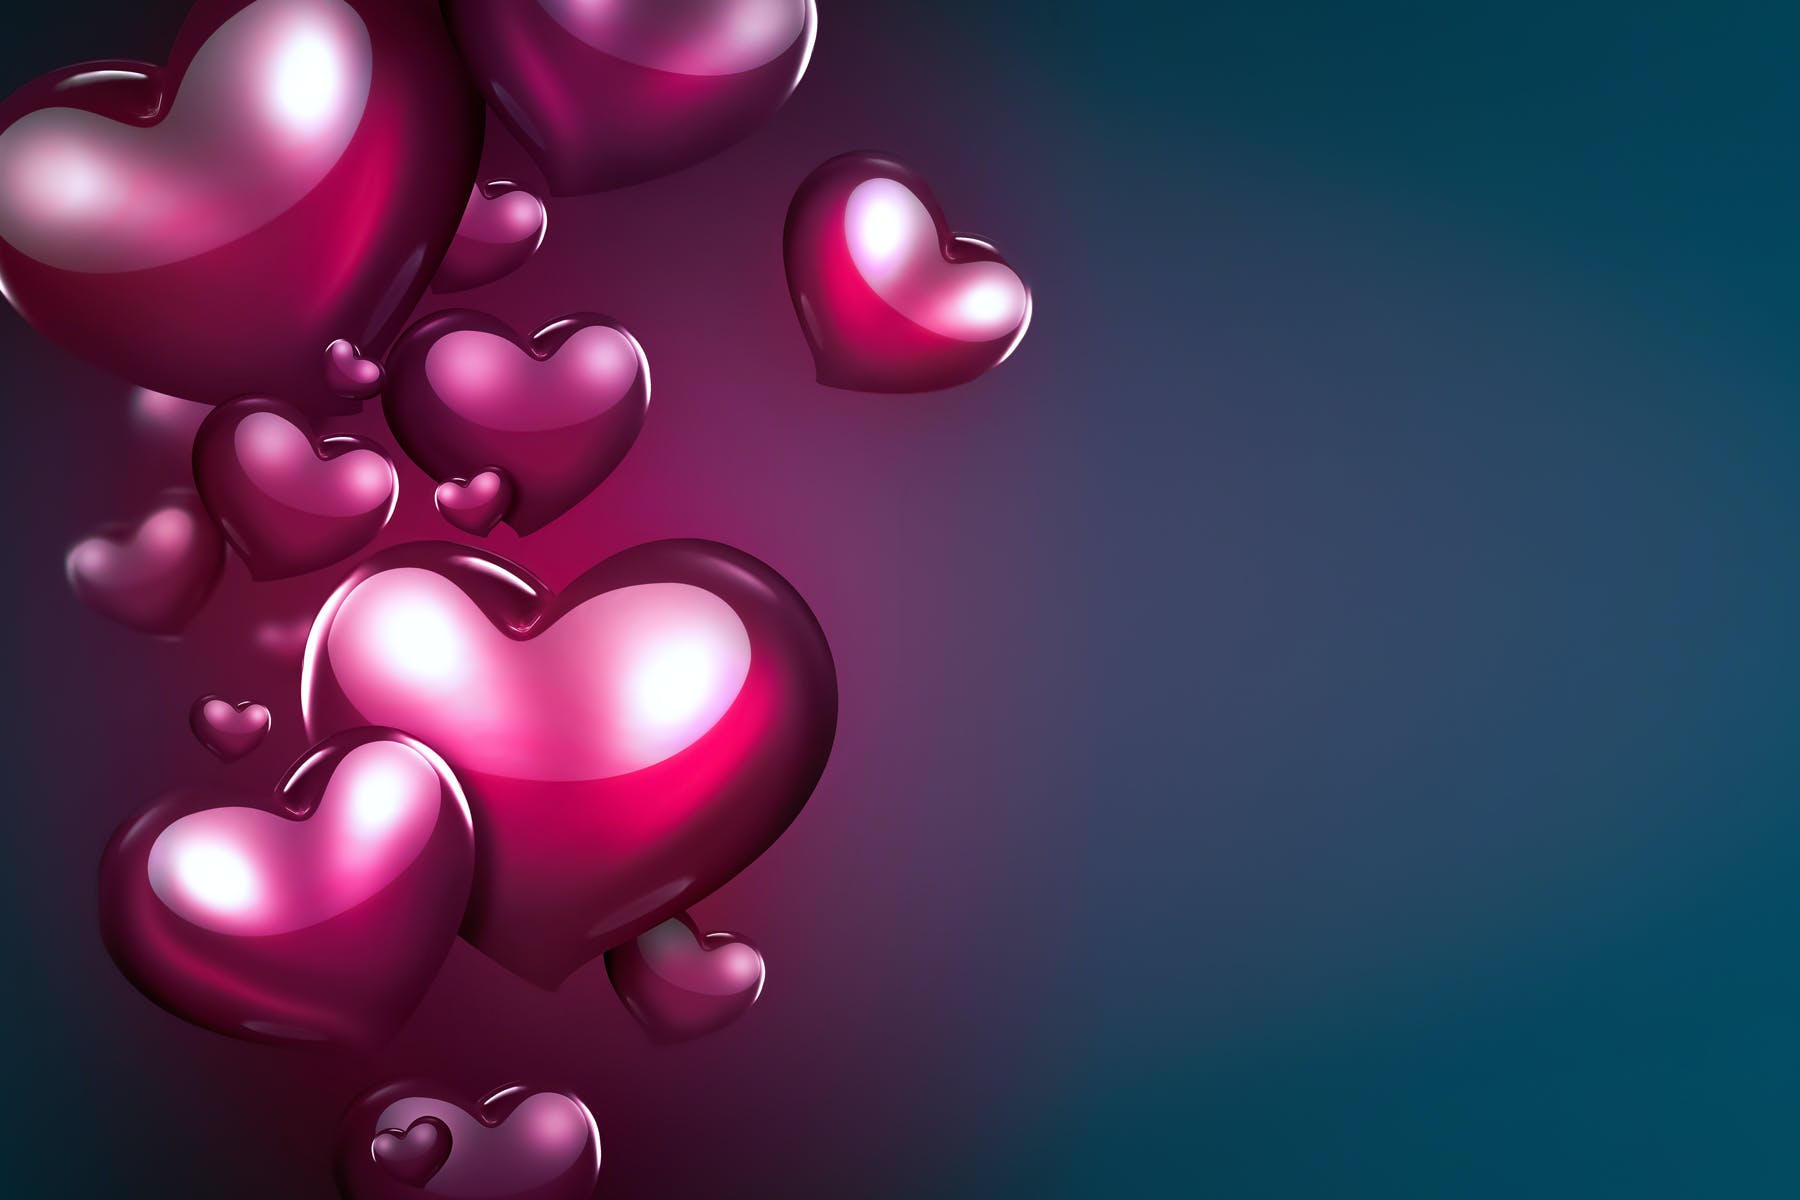 紫红色浪漫心形背景素材 Romantic Background with Hearts APP UI 第1张